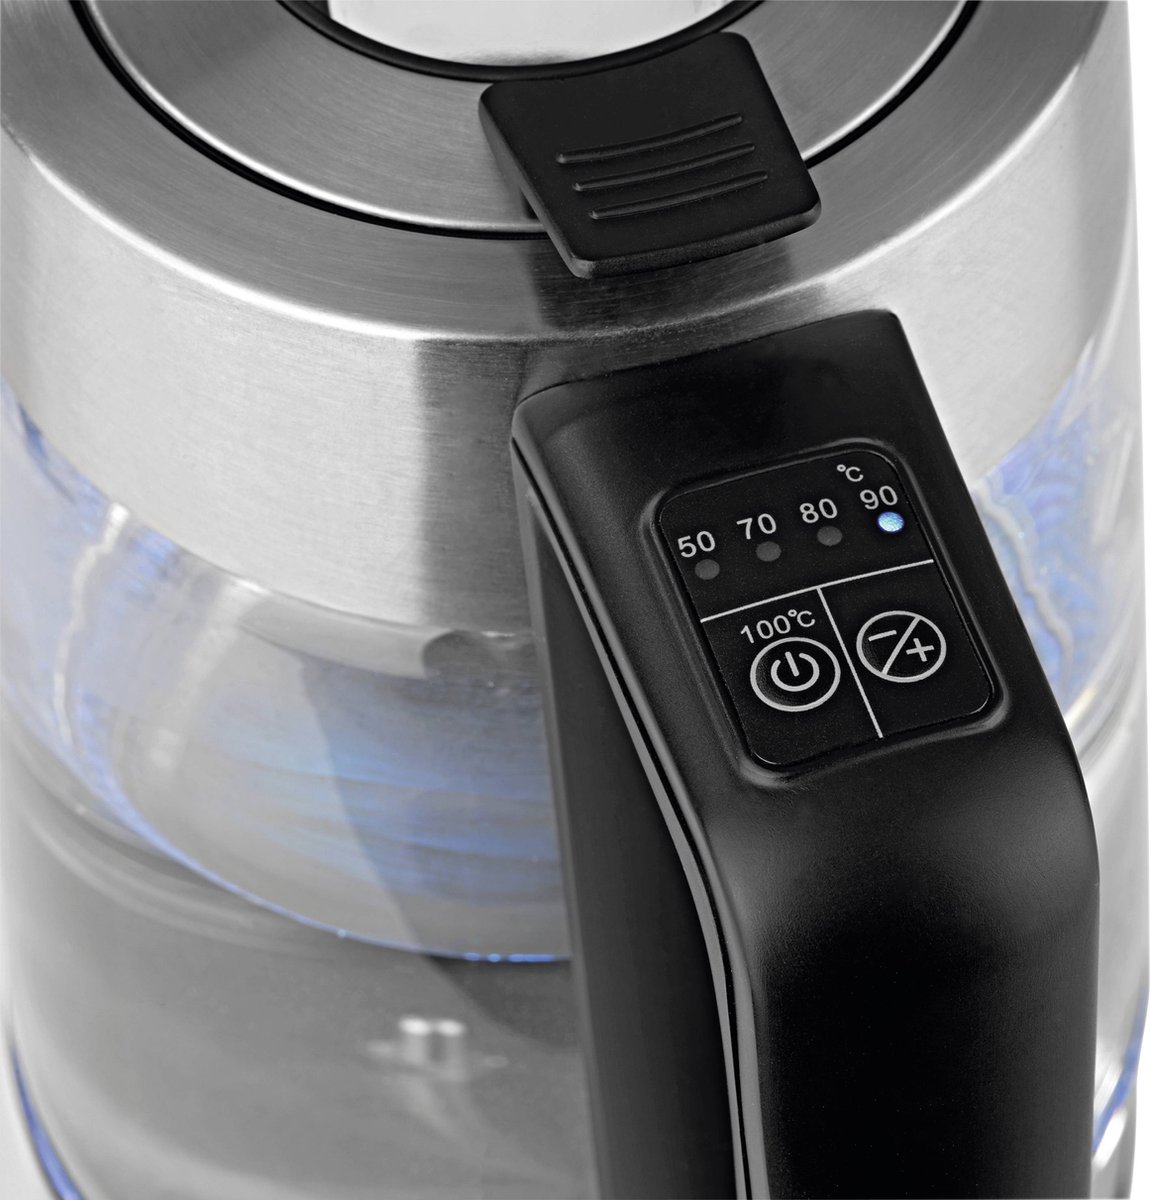 Maxxmee Waterkoker Snoerloos RVS - 2 liter - 5 temperaturen - warmhouden tot 30 minuten